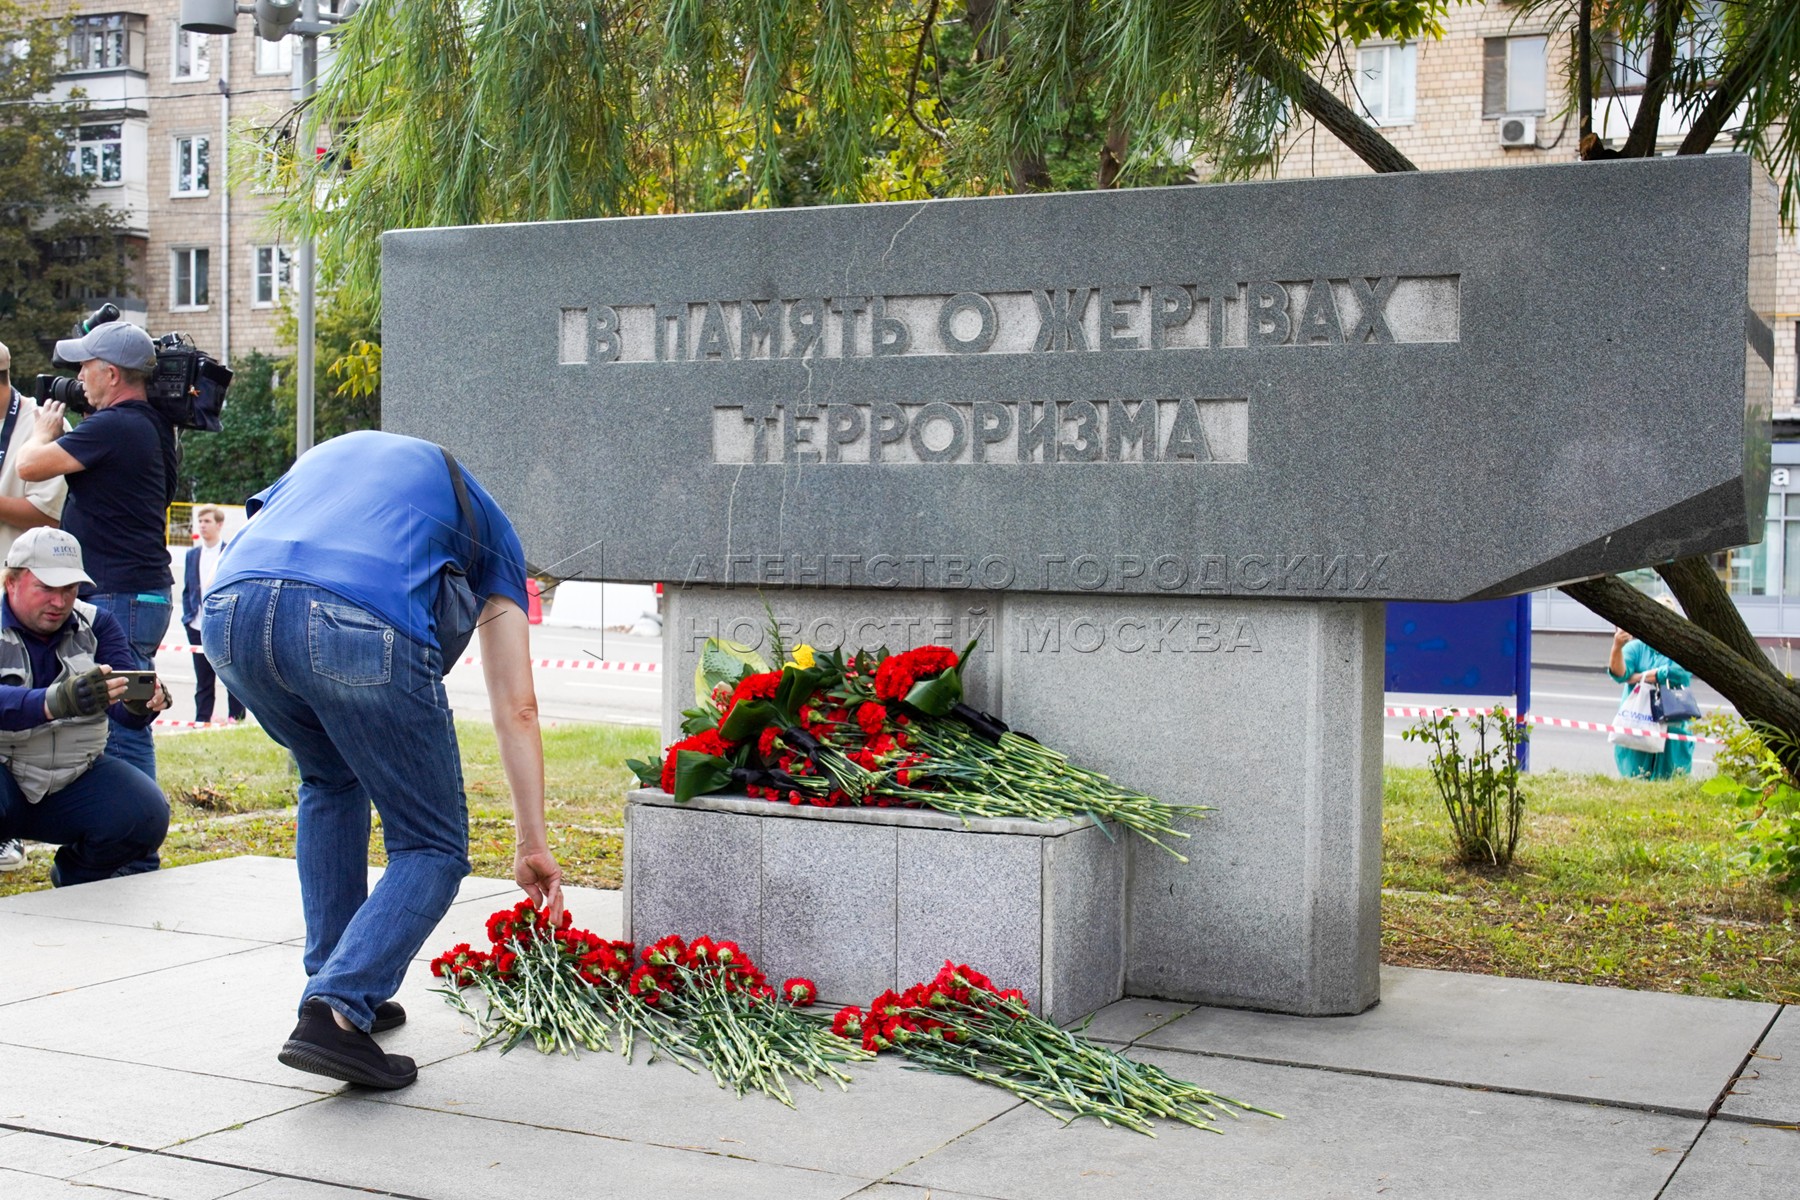 Светлая память жертвам теракта в крокусе. Улица Мельникова памятник погибшим в теракте.